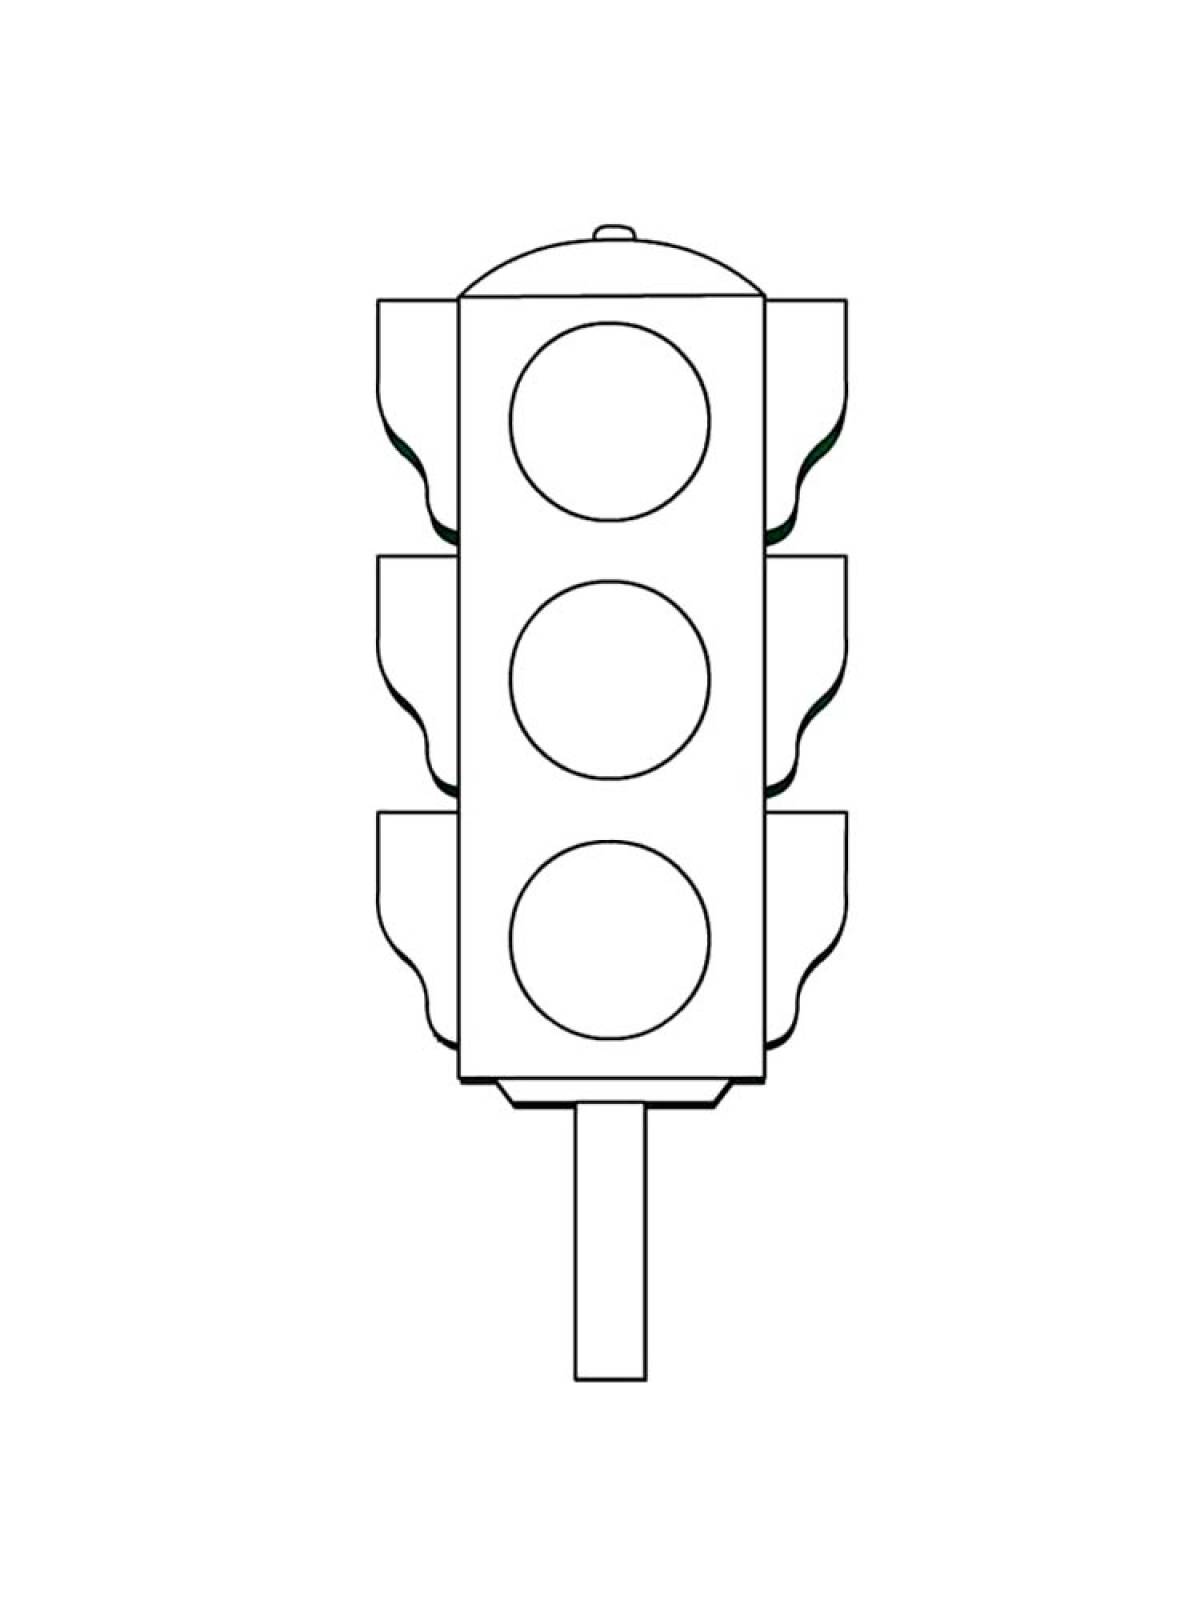 Traffic light 23